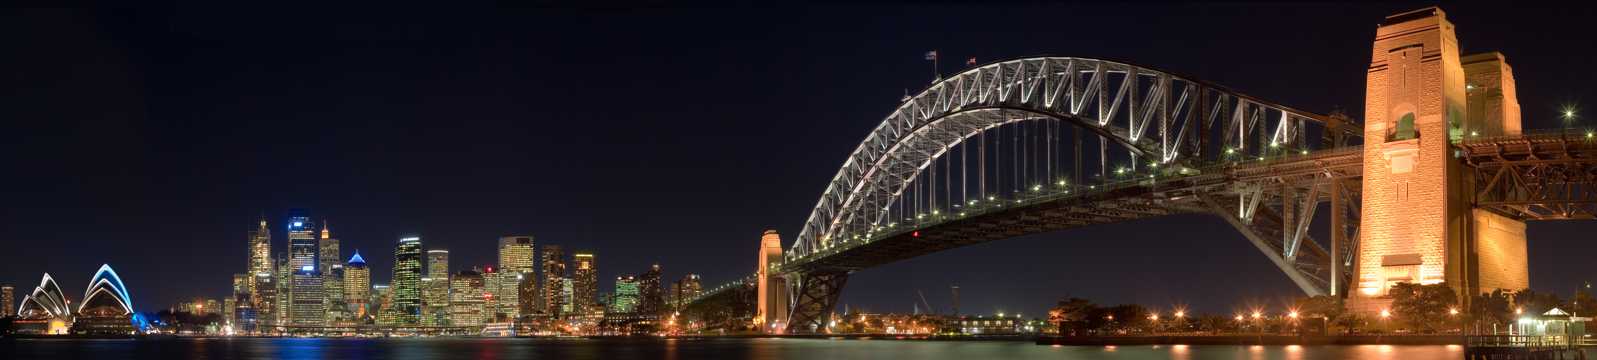 夜幕下的悉尼港口大桥图片